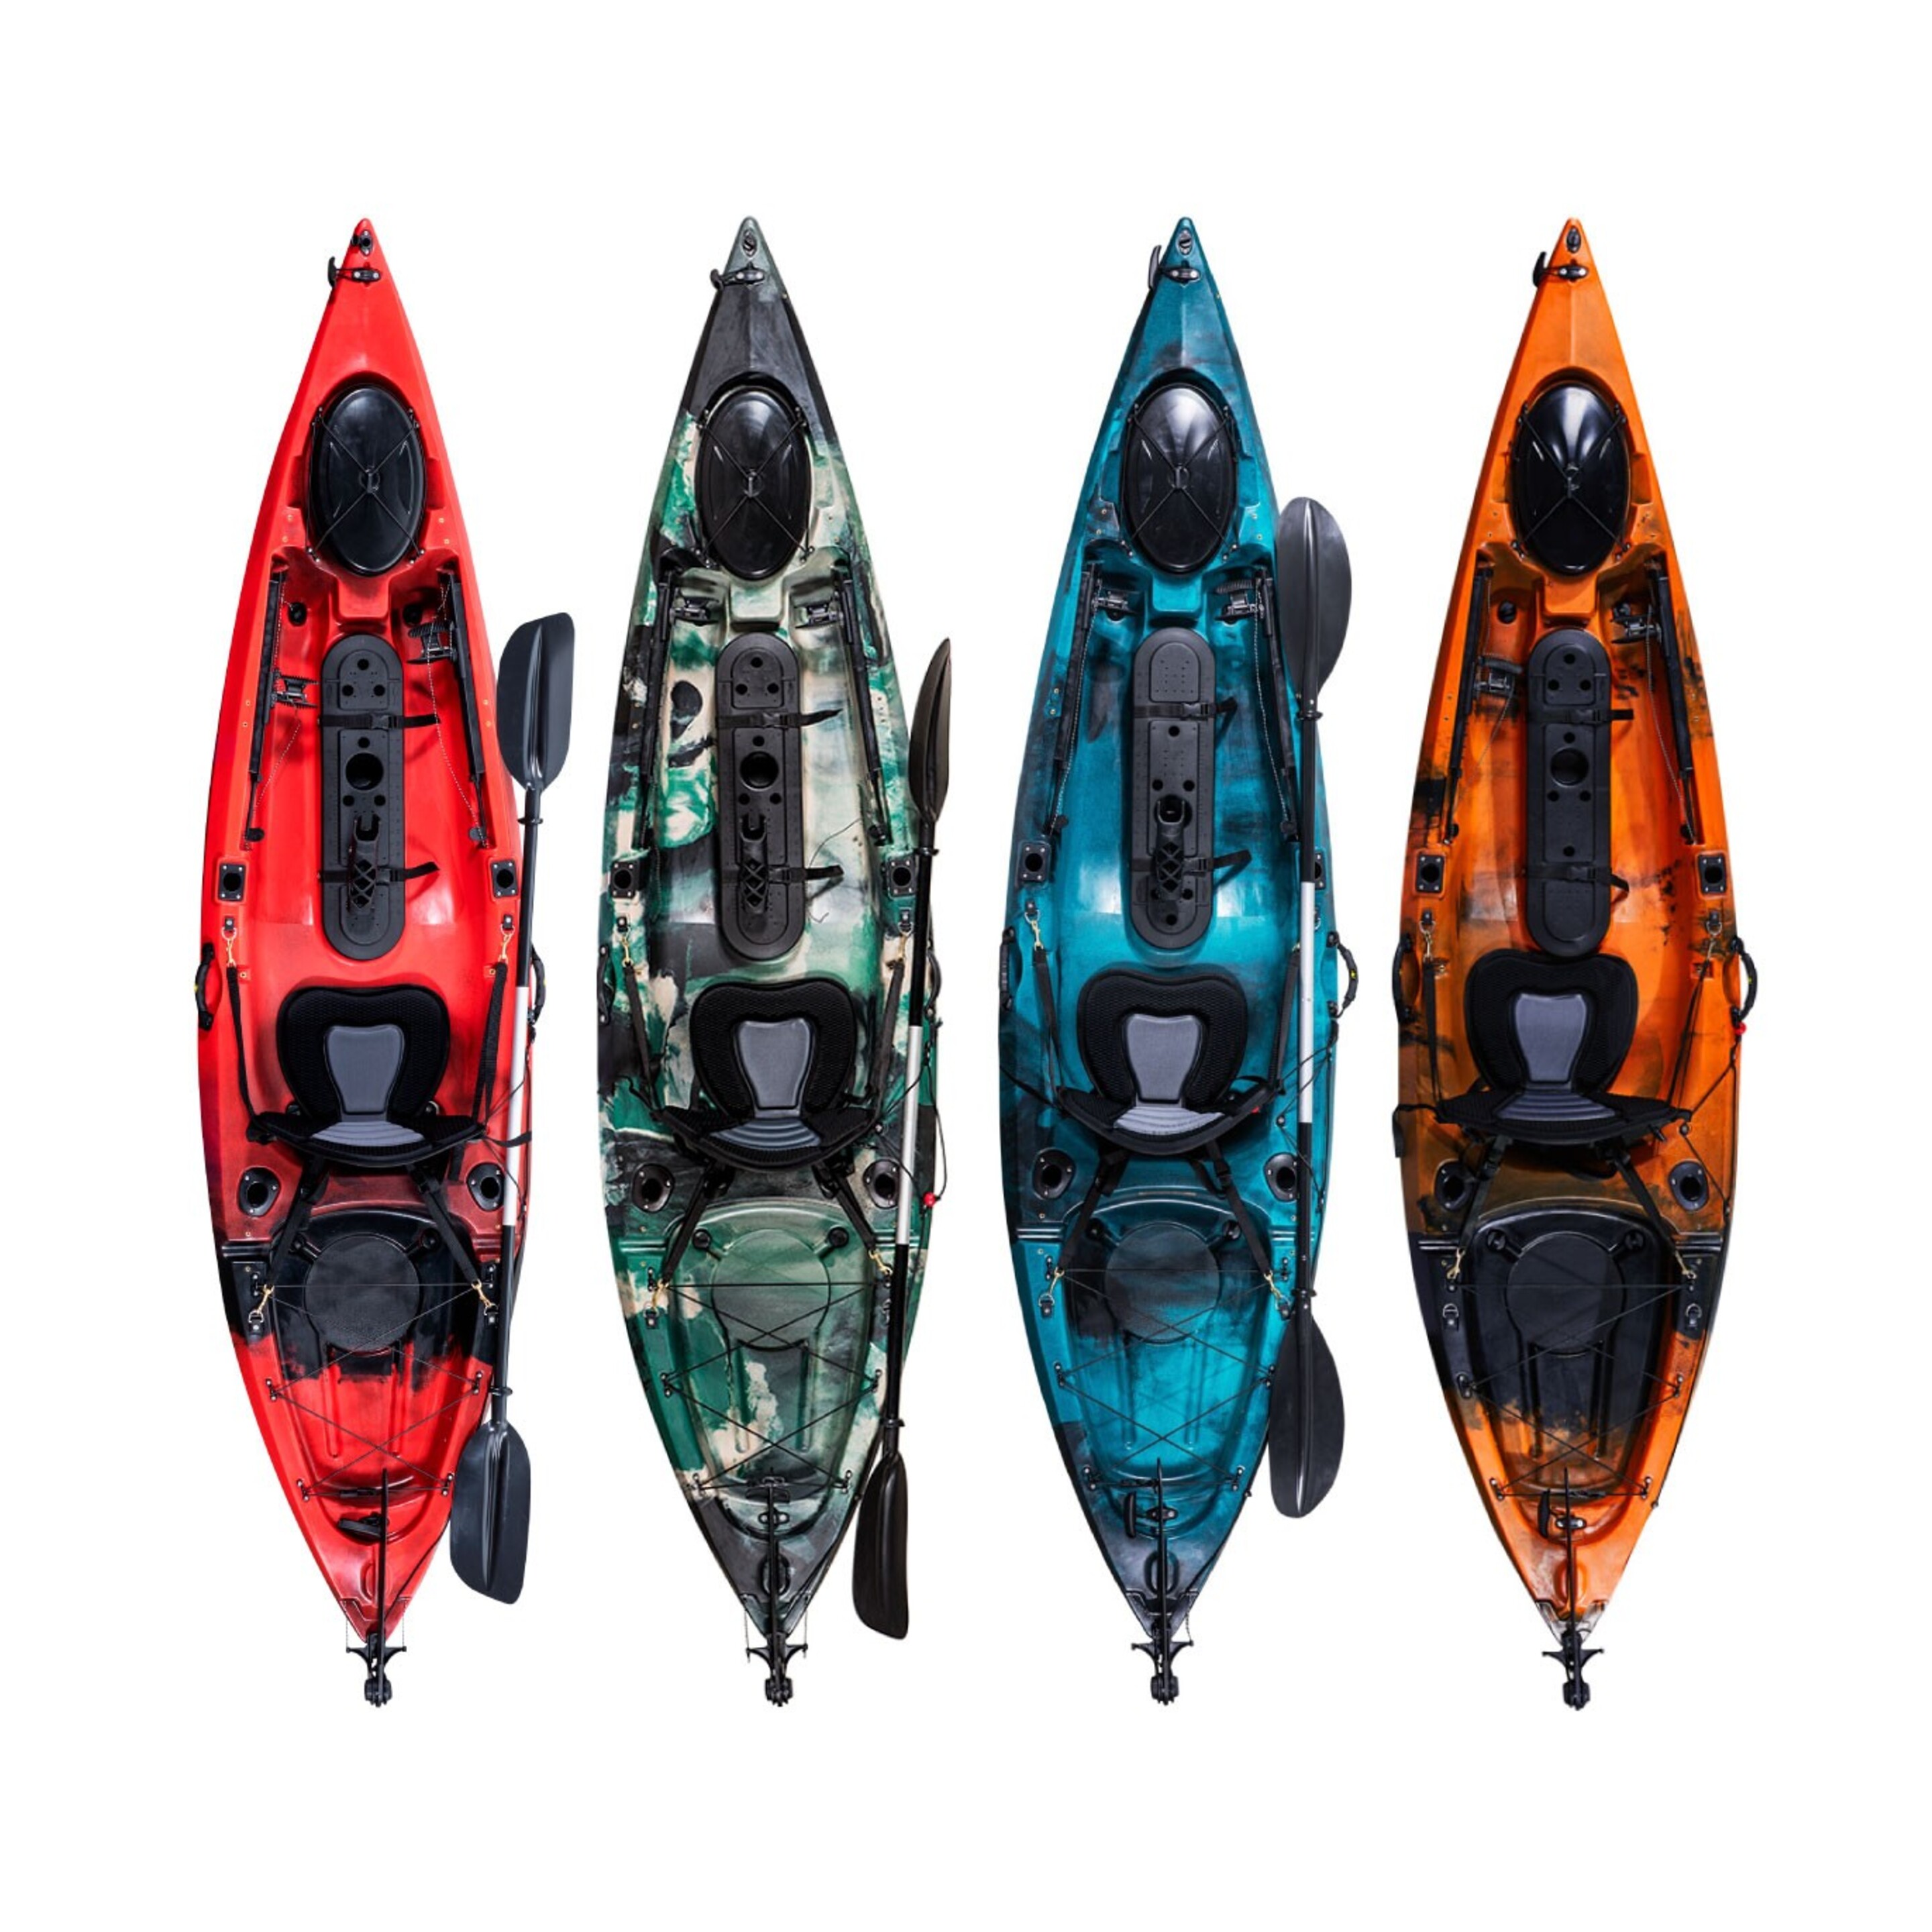 Kayak Para Pesca Curricán Pro Angler 10 (310 X 76cm)